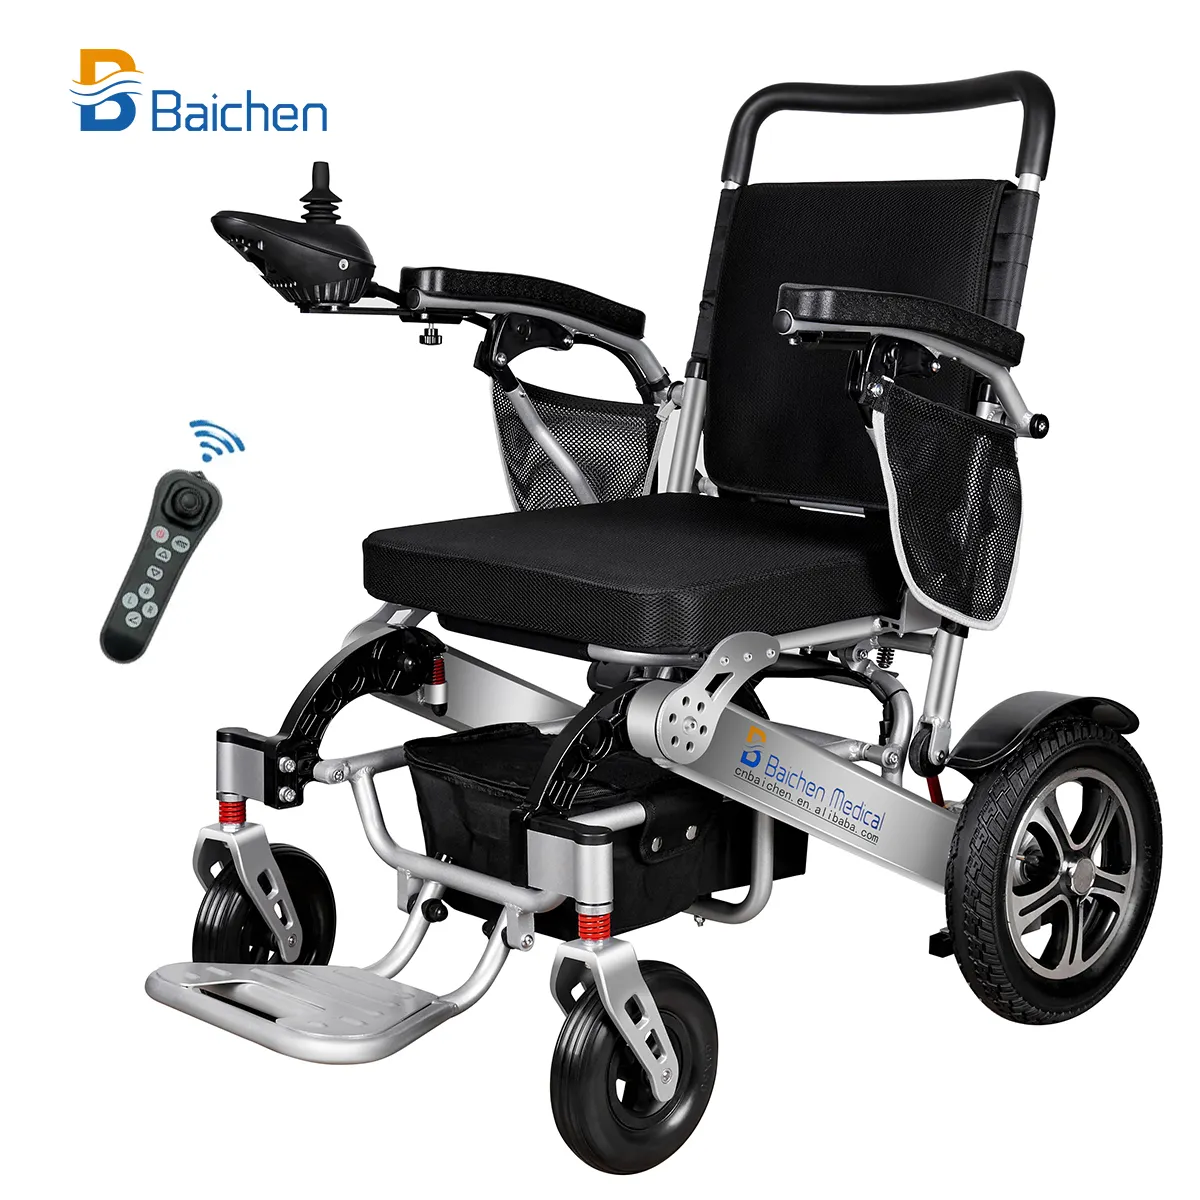 Baichen Medical Equipment Leicht gewicht Tragbare elektrische Fernbedienung Klappbarer Elektro rollstuhl für Behinderte